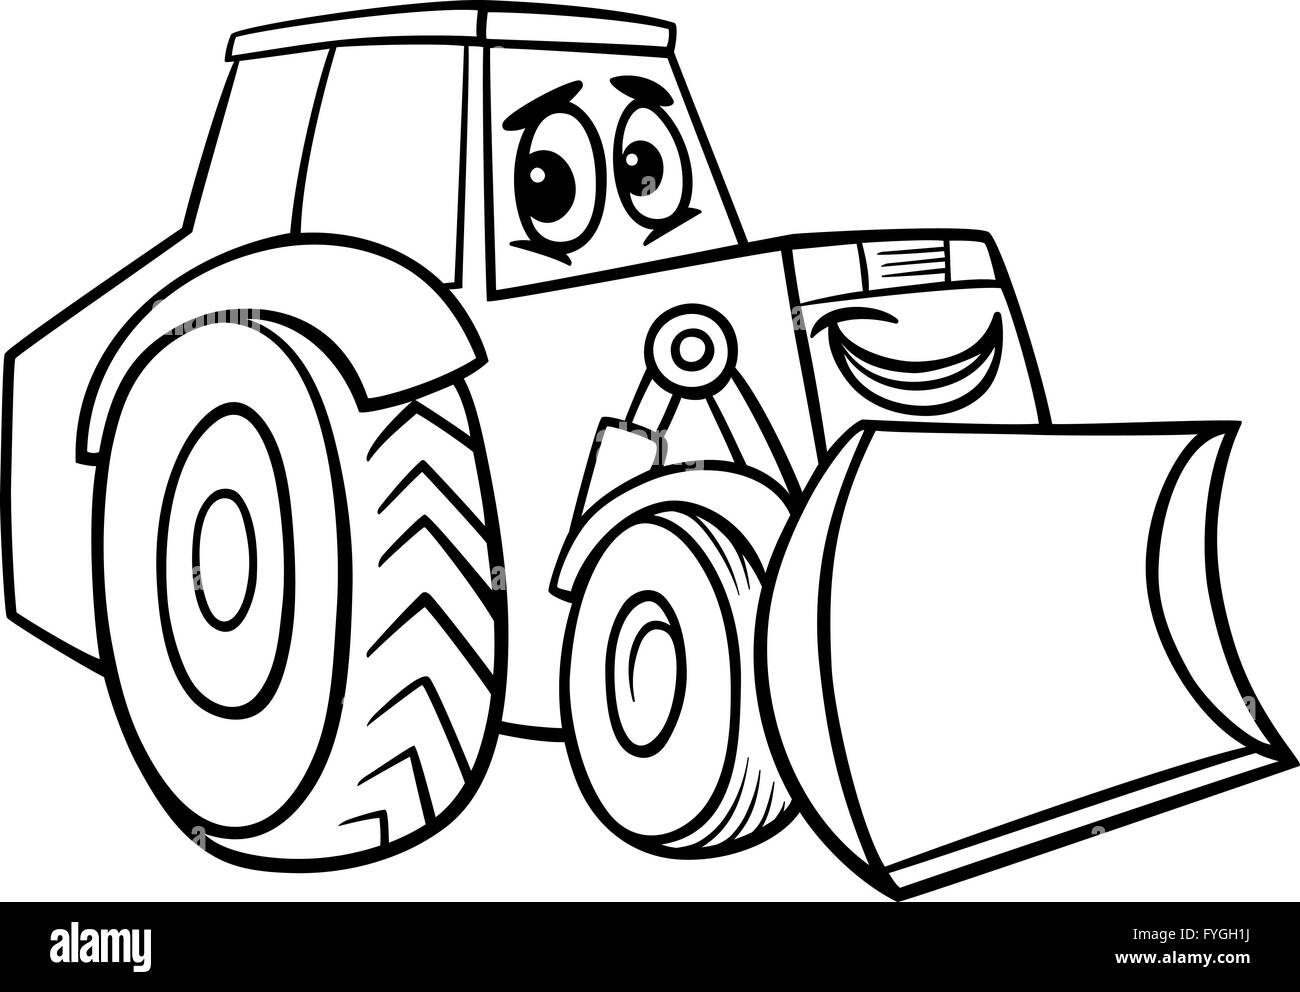 bulldozer cartoon for coloring book Stock Photo - Alamy